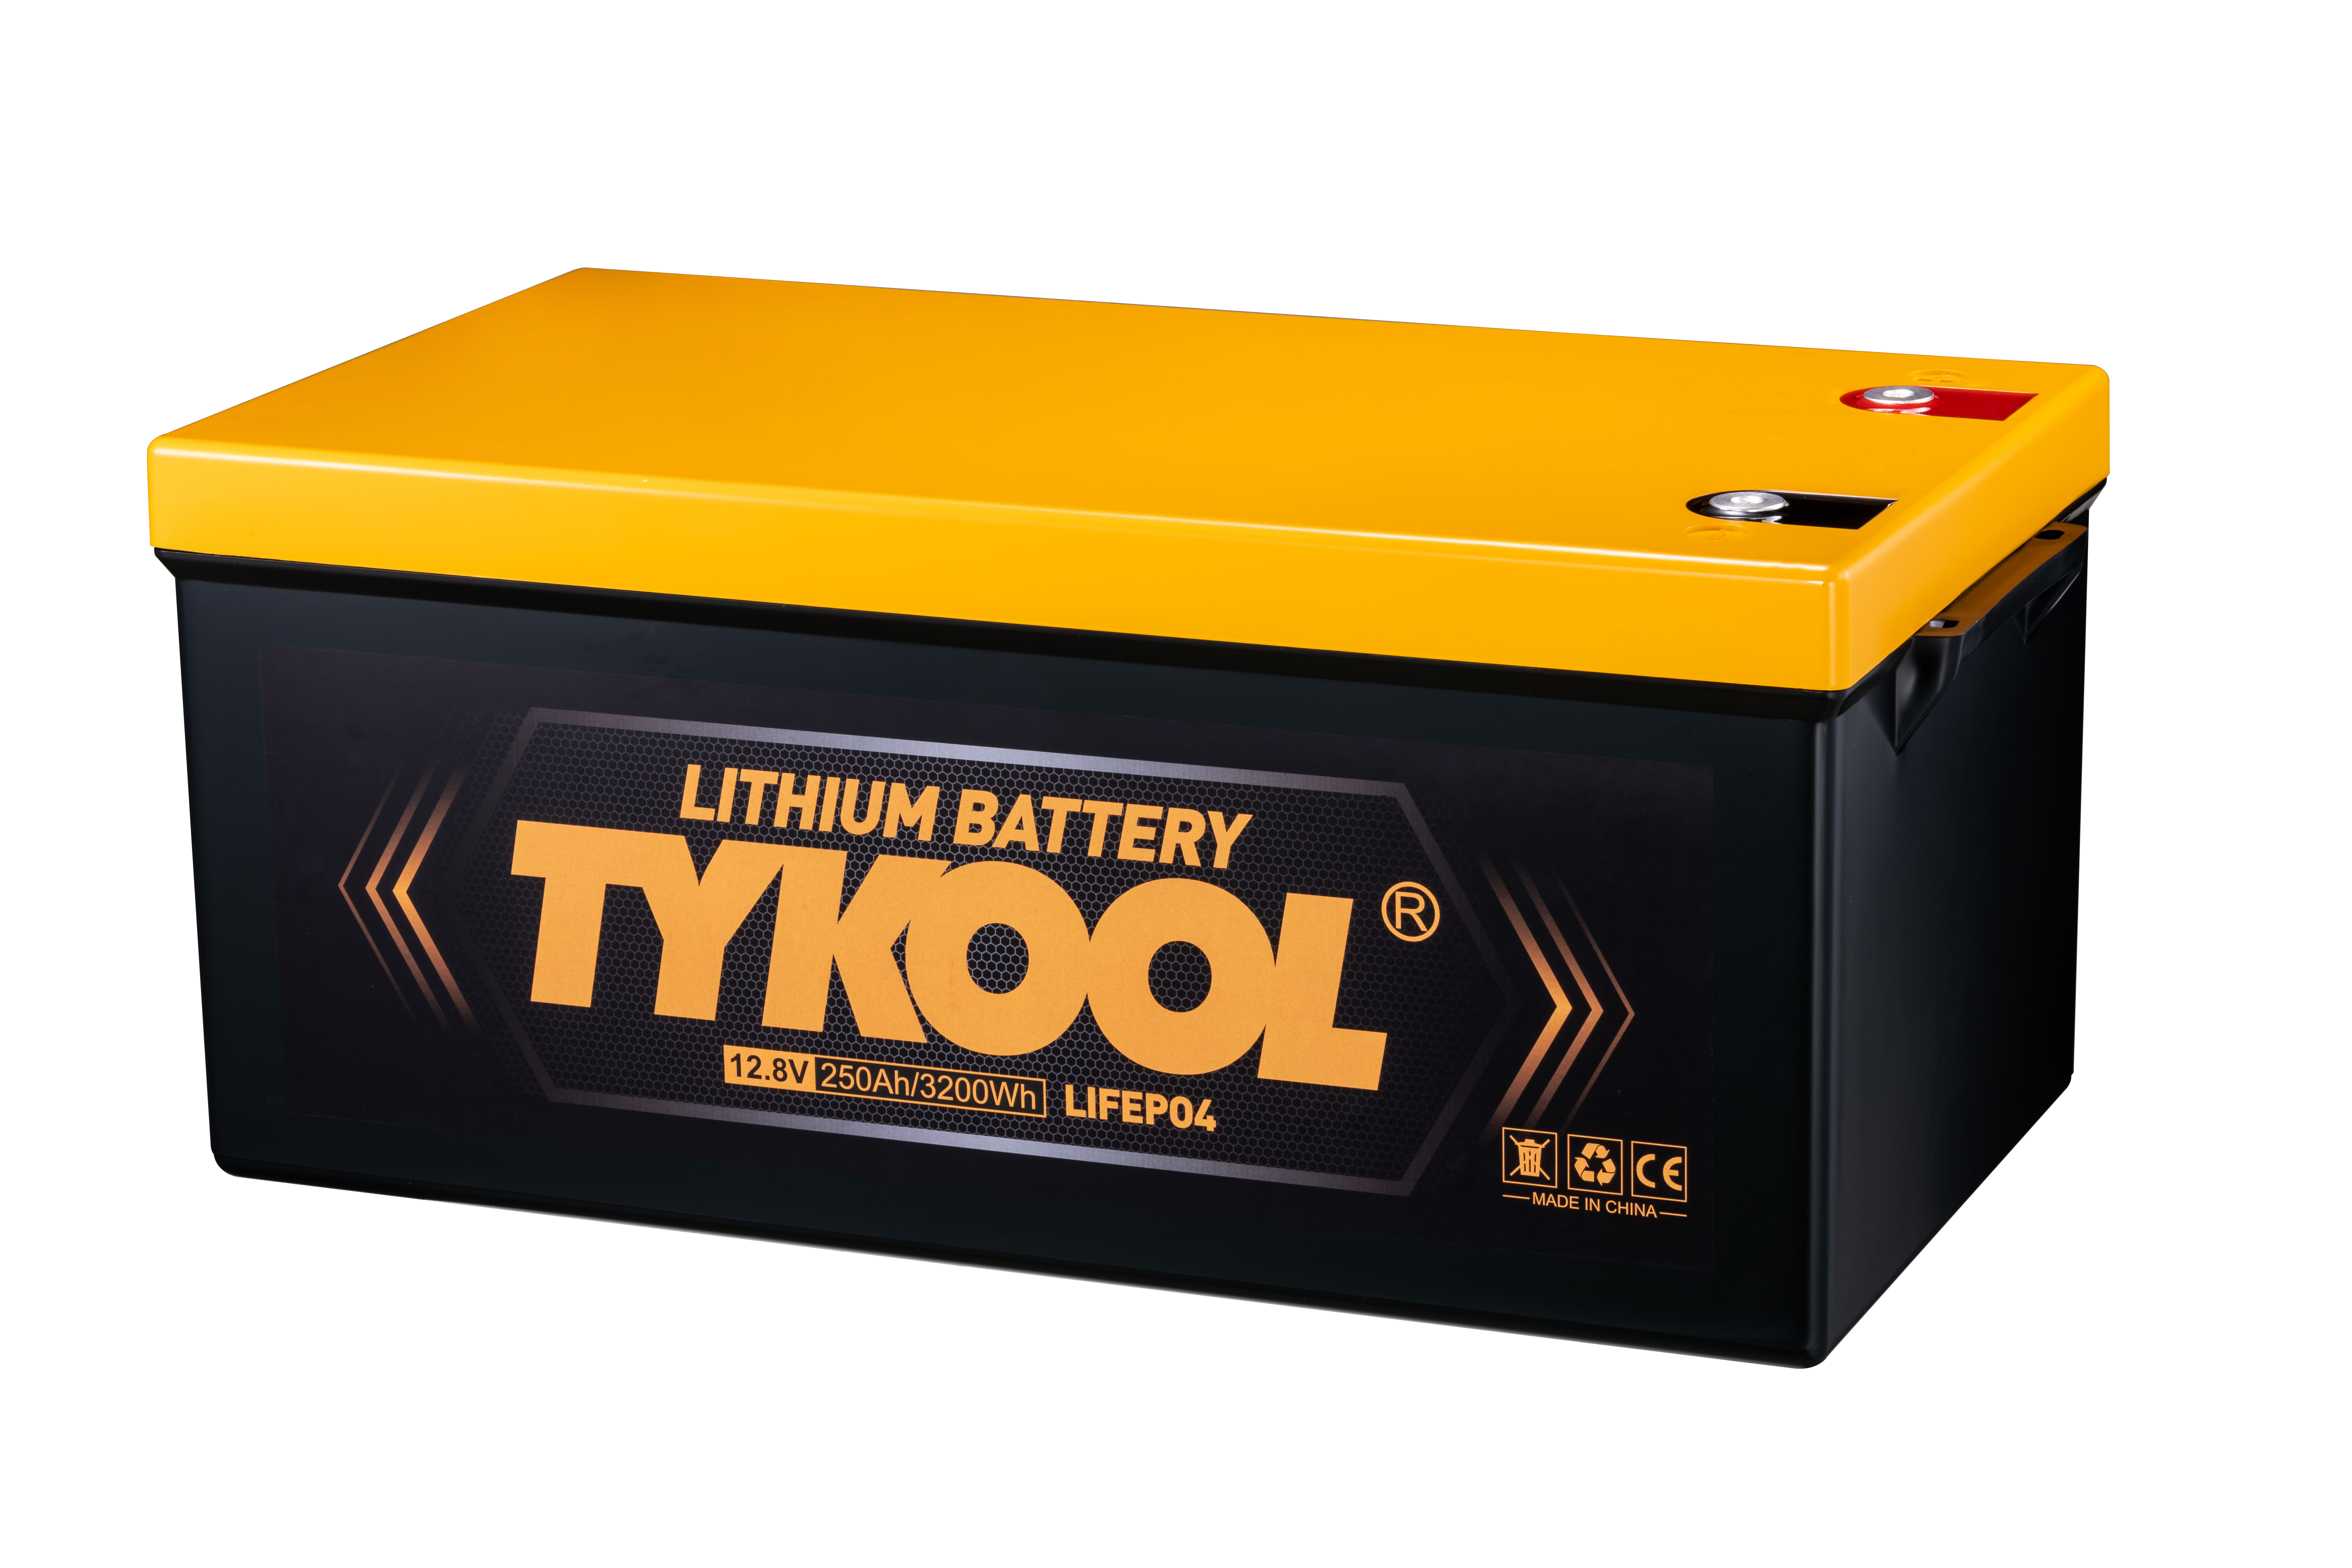 12.80V / 12V 250Ah LiFePO4 Lithium Battery